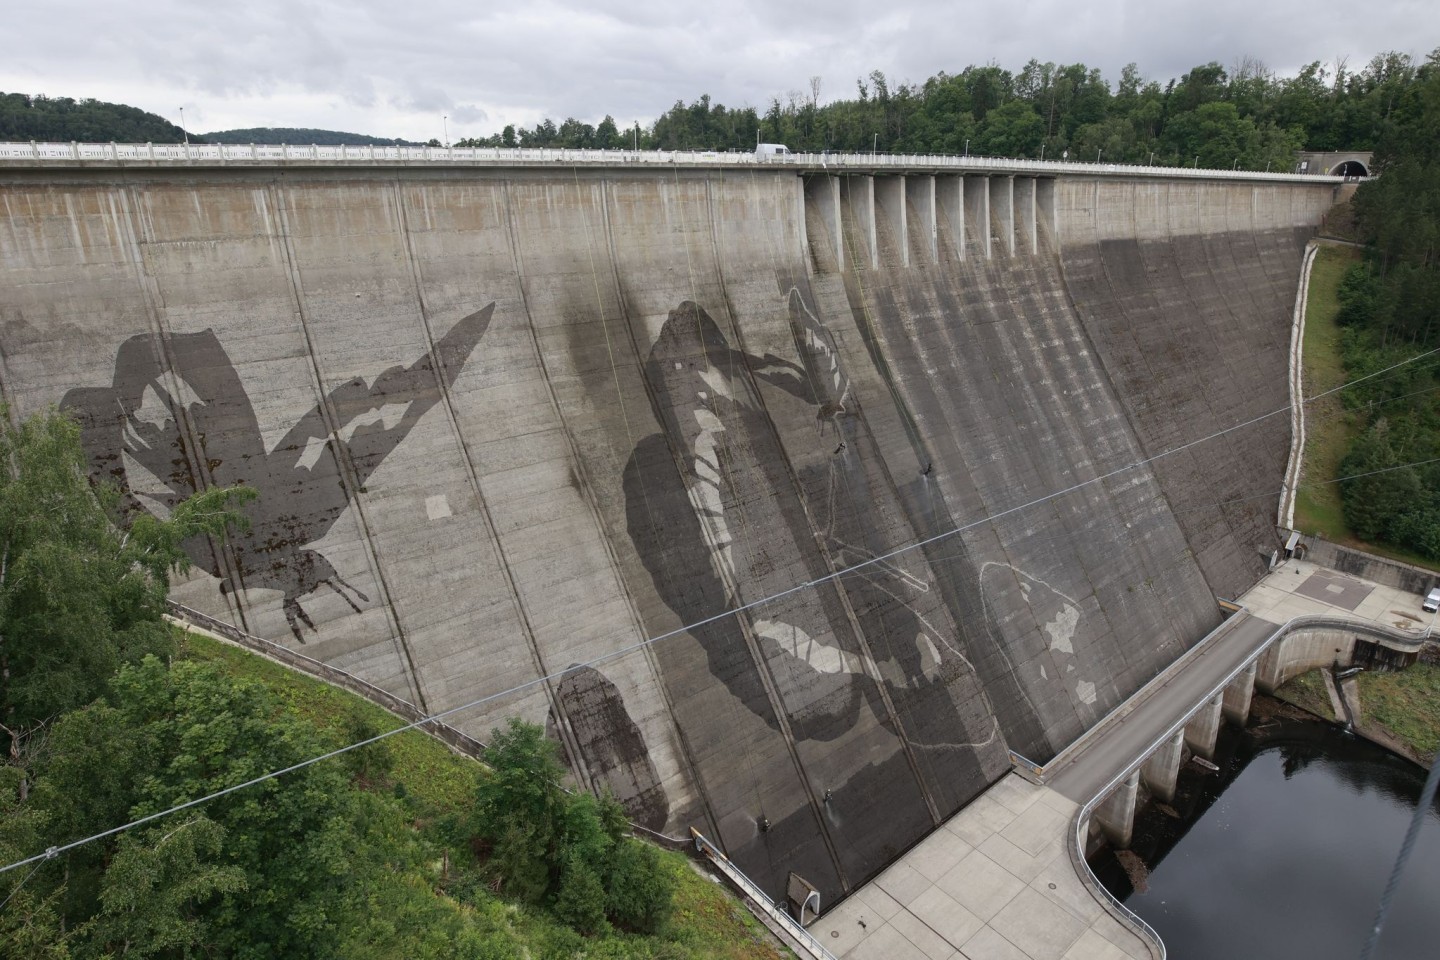 Auf der Staumauer der größten Trinkwassertalsperre Deutschlands wird mit Hochdruckreinigern ein Kunstwerk gemalt.